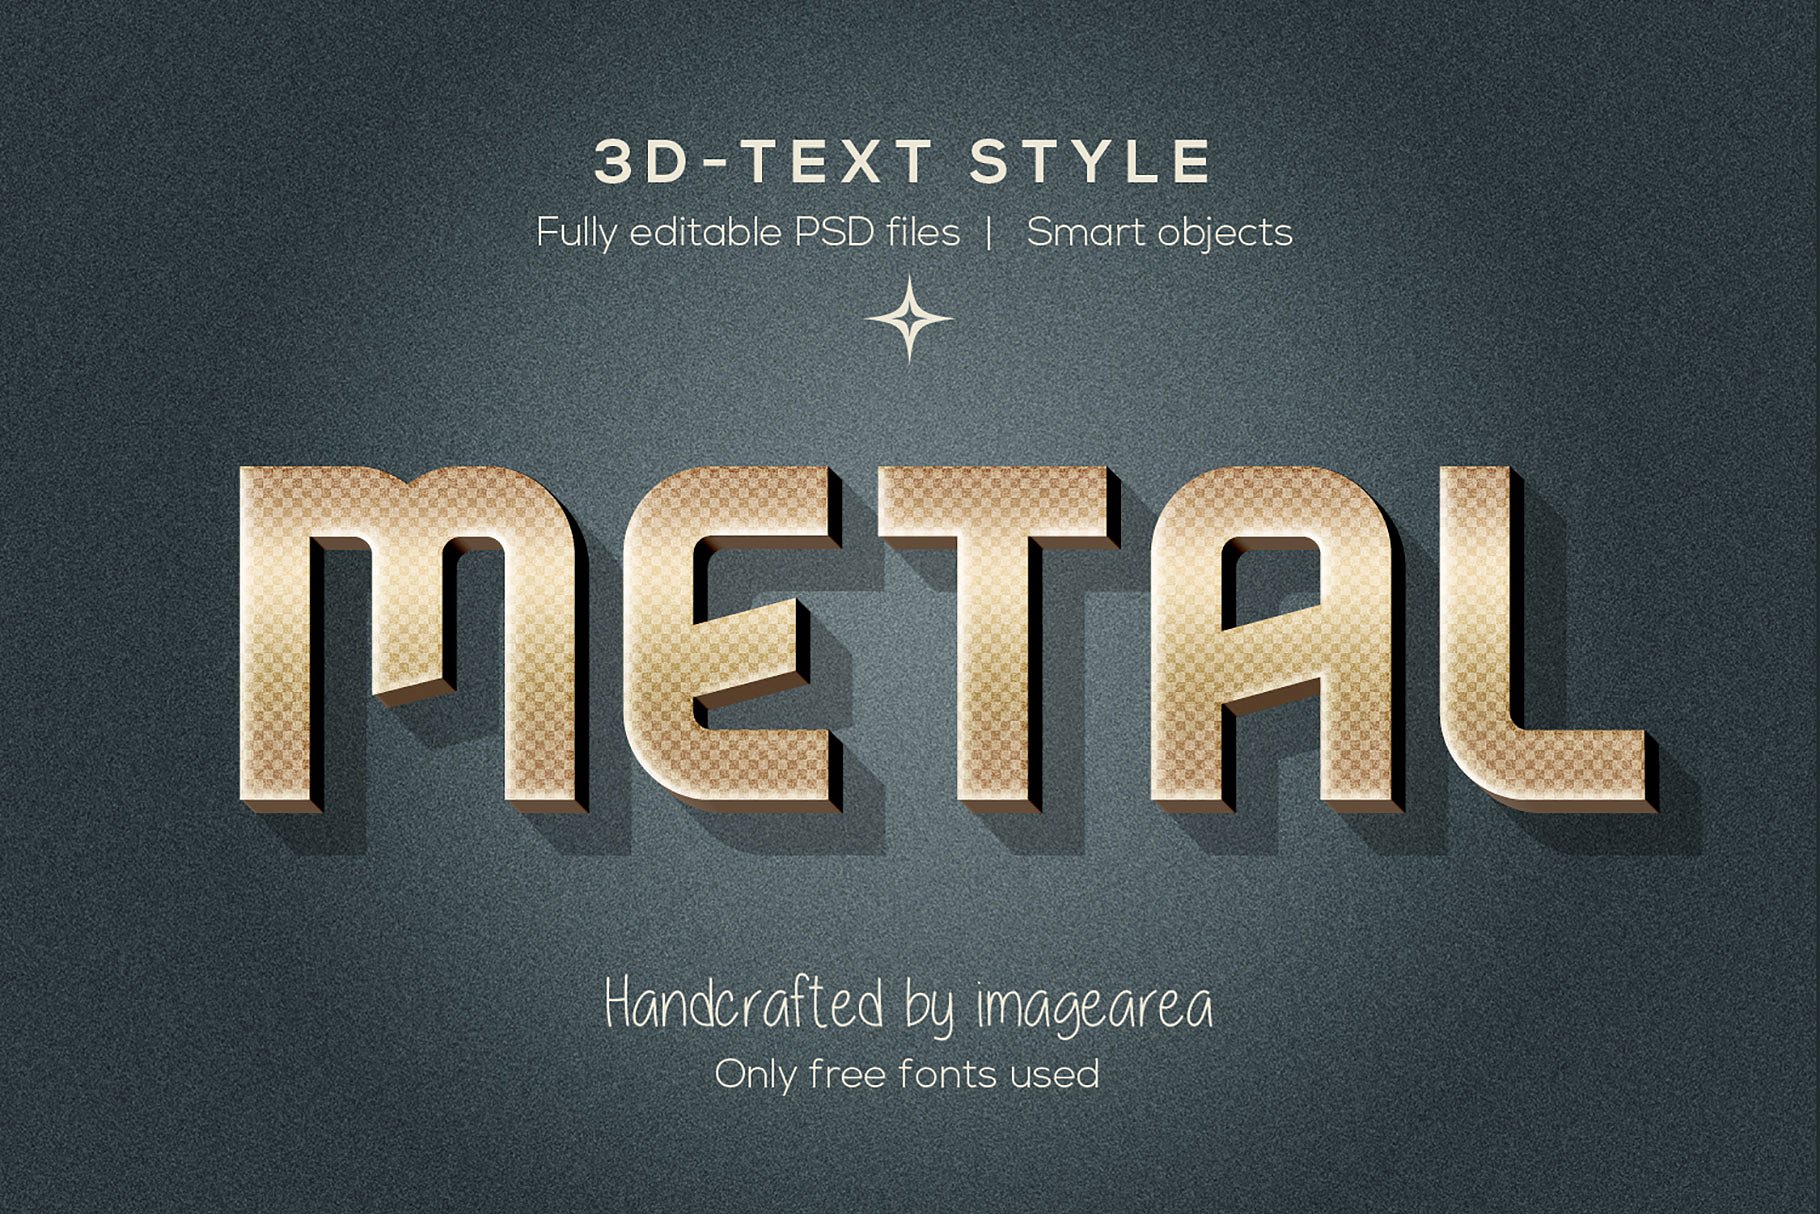 创意3D文本图层样式 Amazing 3D Text Styles插图(8)